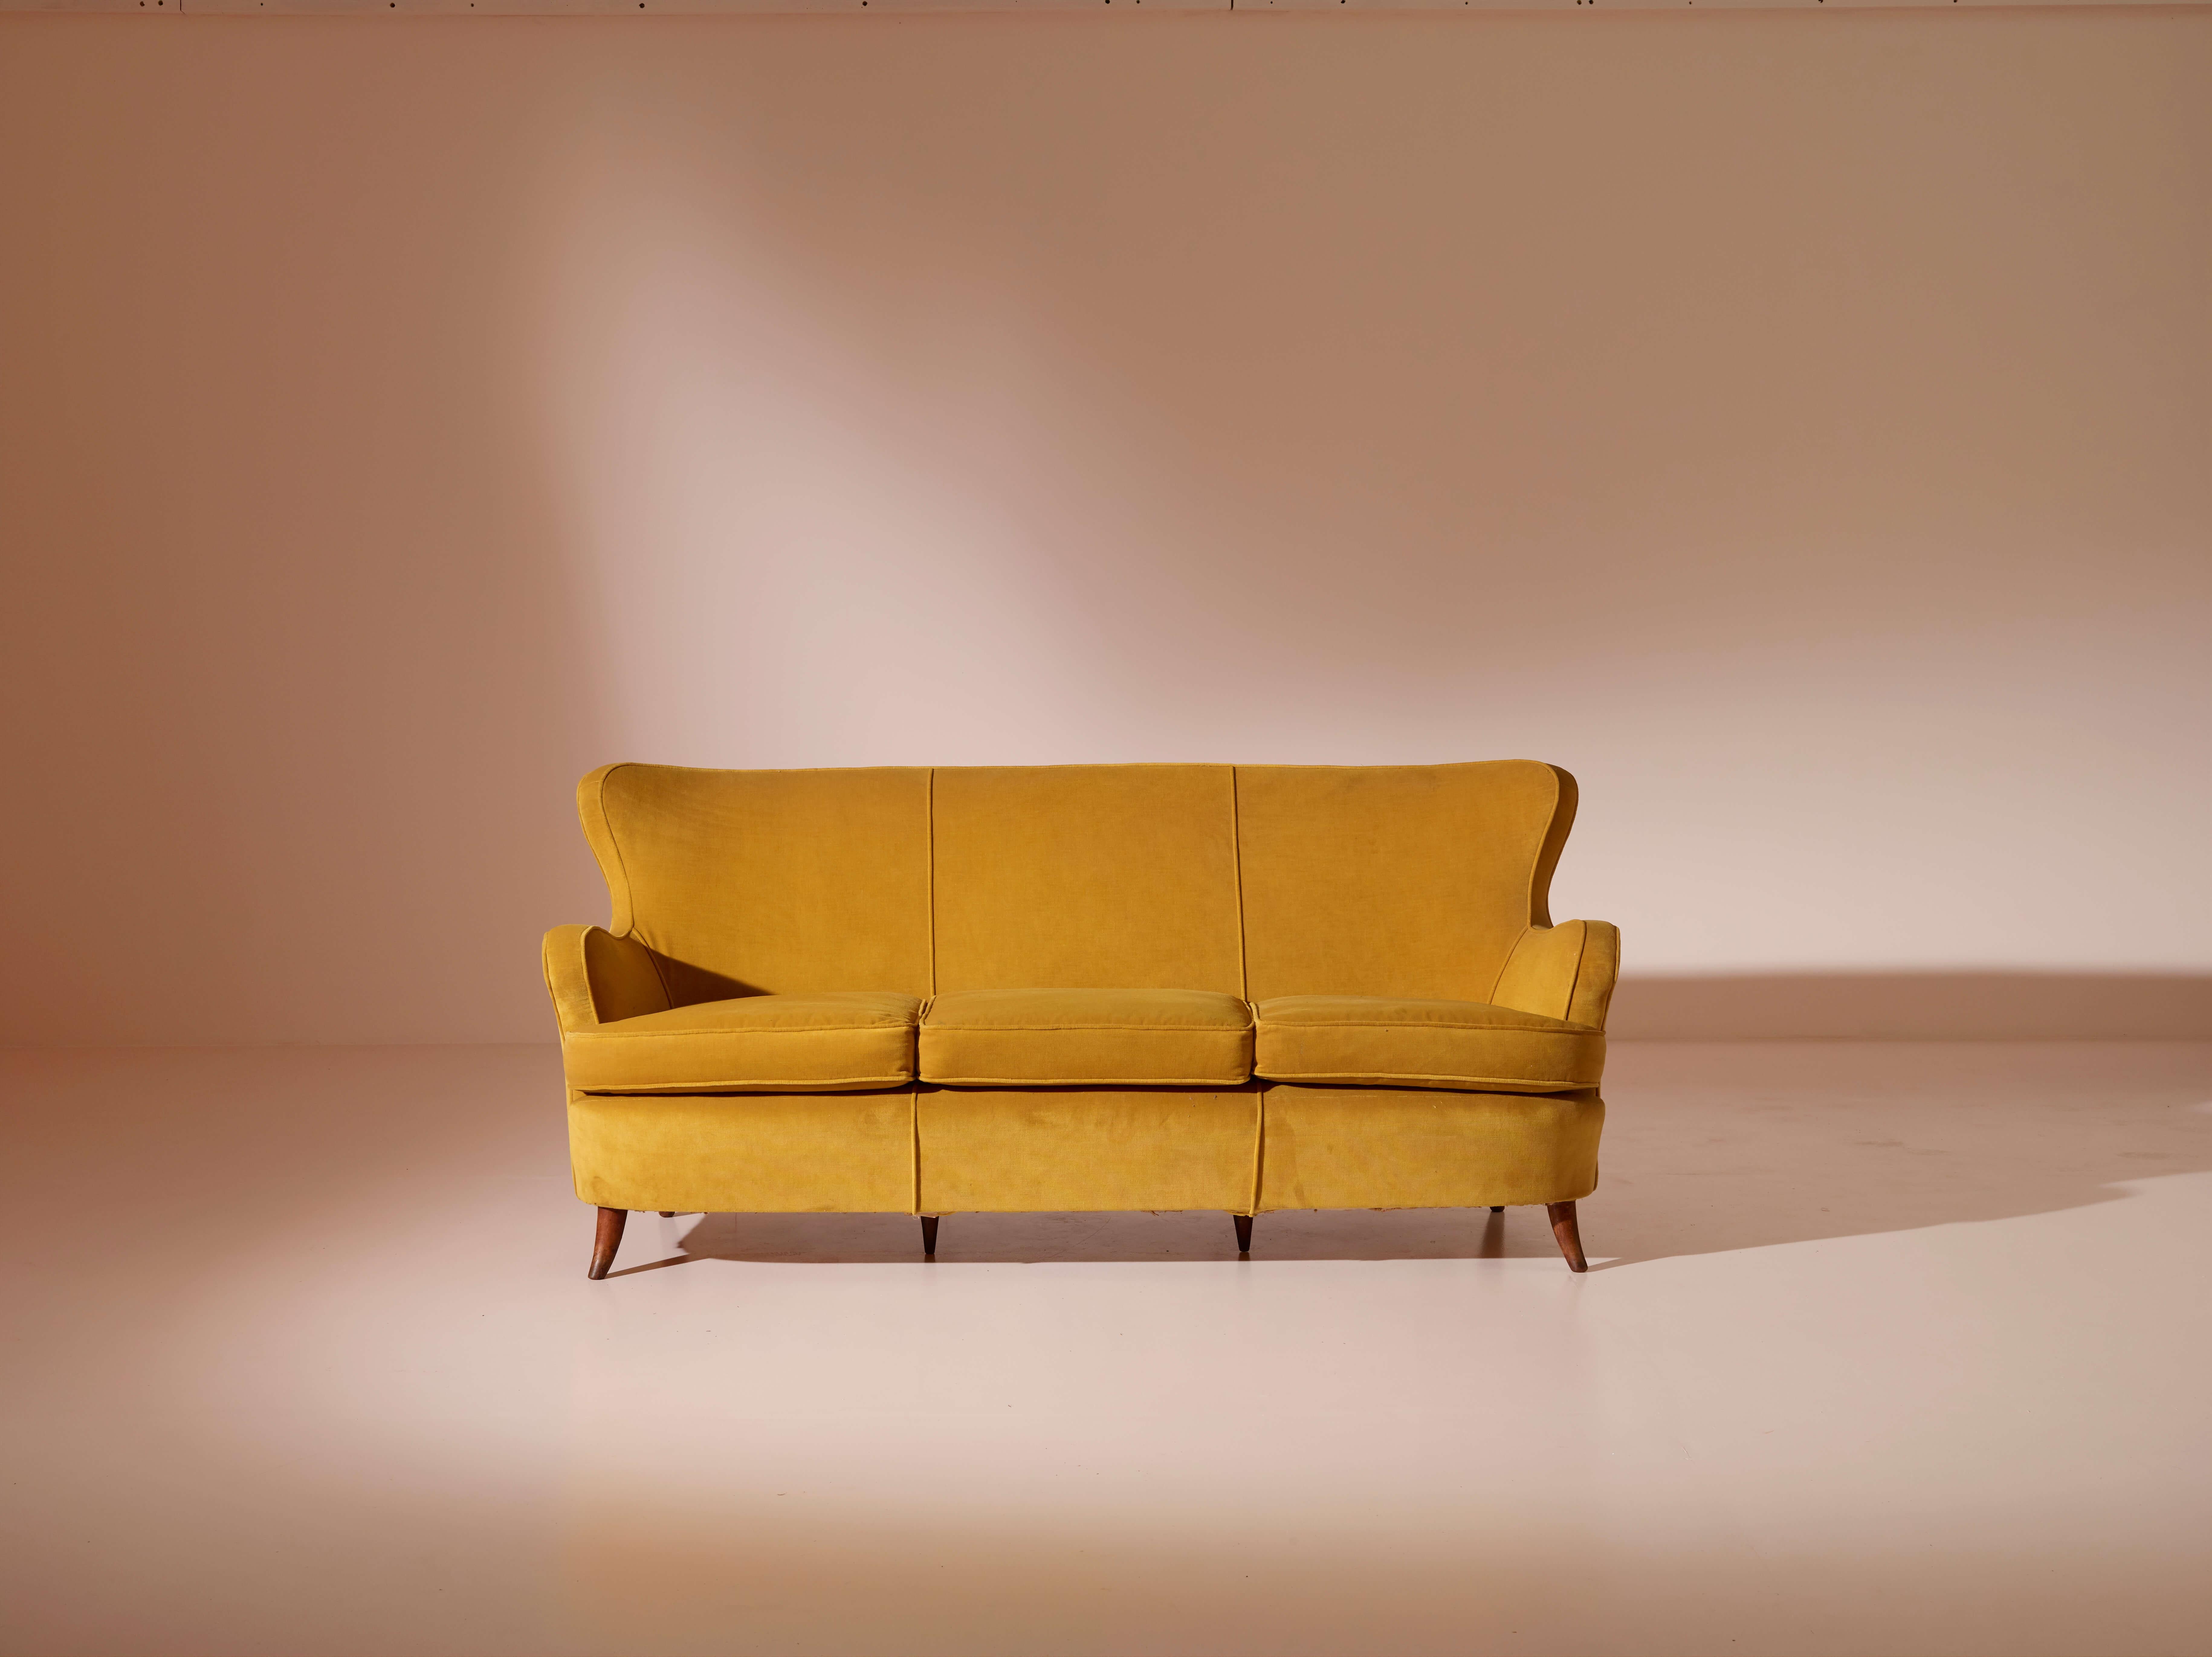 Das ästhetisch raffinierte Sofa des bekannten italienischen Designers Osvaldo Borsani aus den 1940er Jahren verkörpert den unvergänglichen Charme italienischer Möbel aus der Mitte des Jahrhunderts.

Das Sofa zeichnet sich durch seine organischen